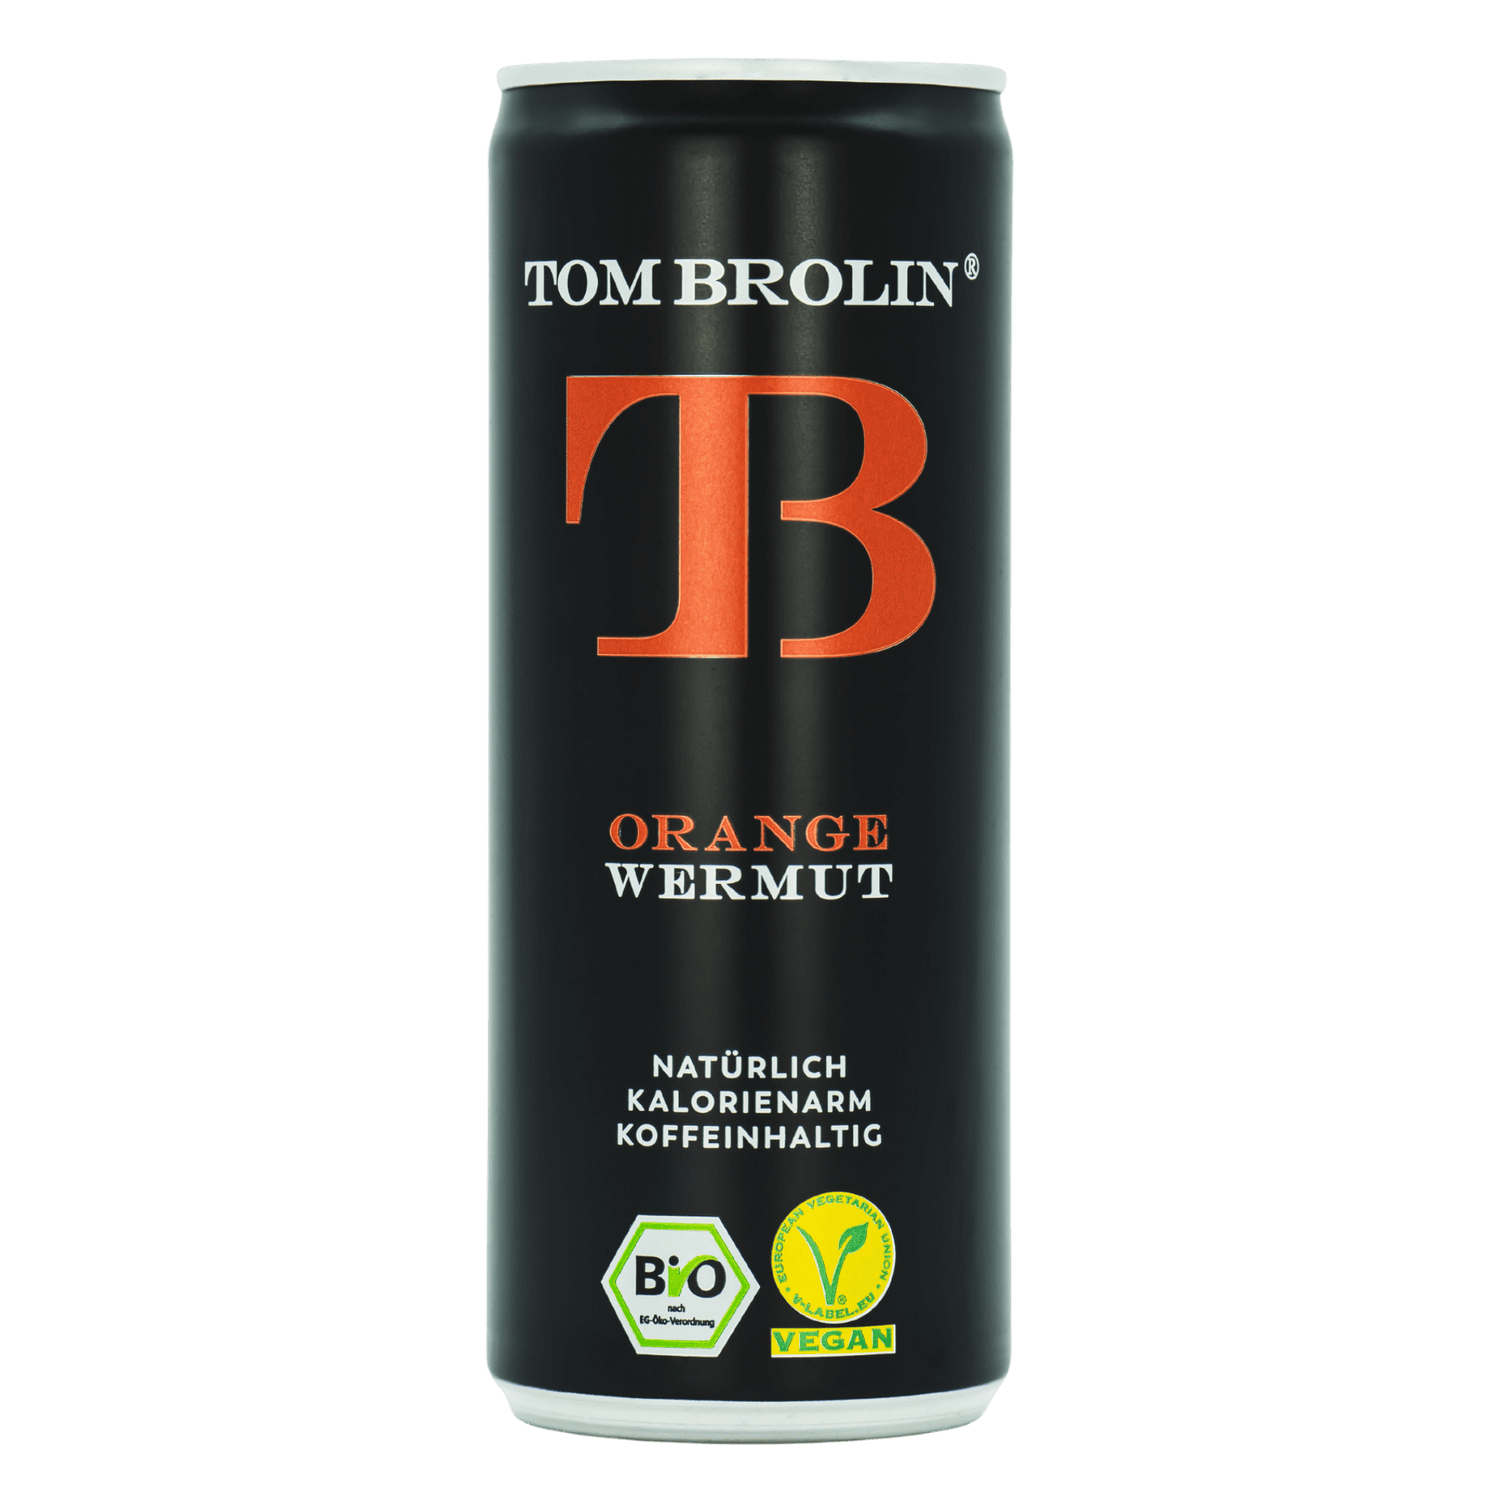 Ganz nach unserem Motto „BITTER IS BETTER“ wollen wir mit einem ehrlichen Getränk -TOM BROLIN- einen zuckerarmen Lebensstil fördern.